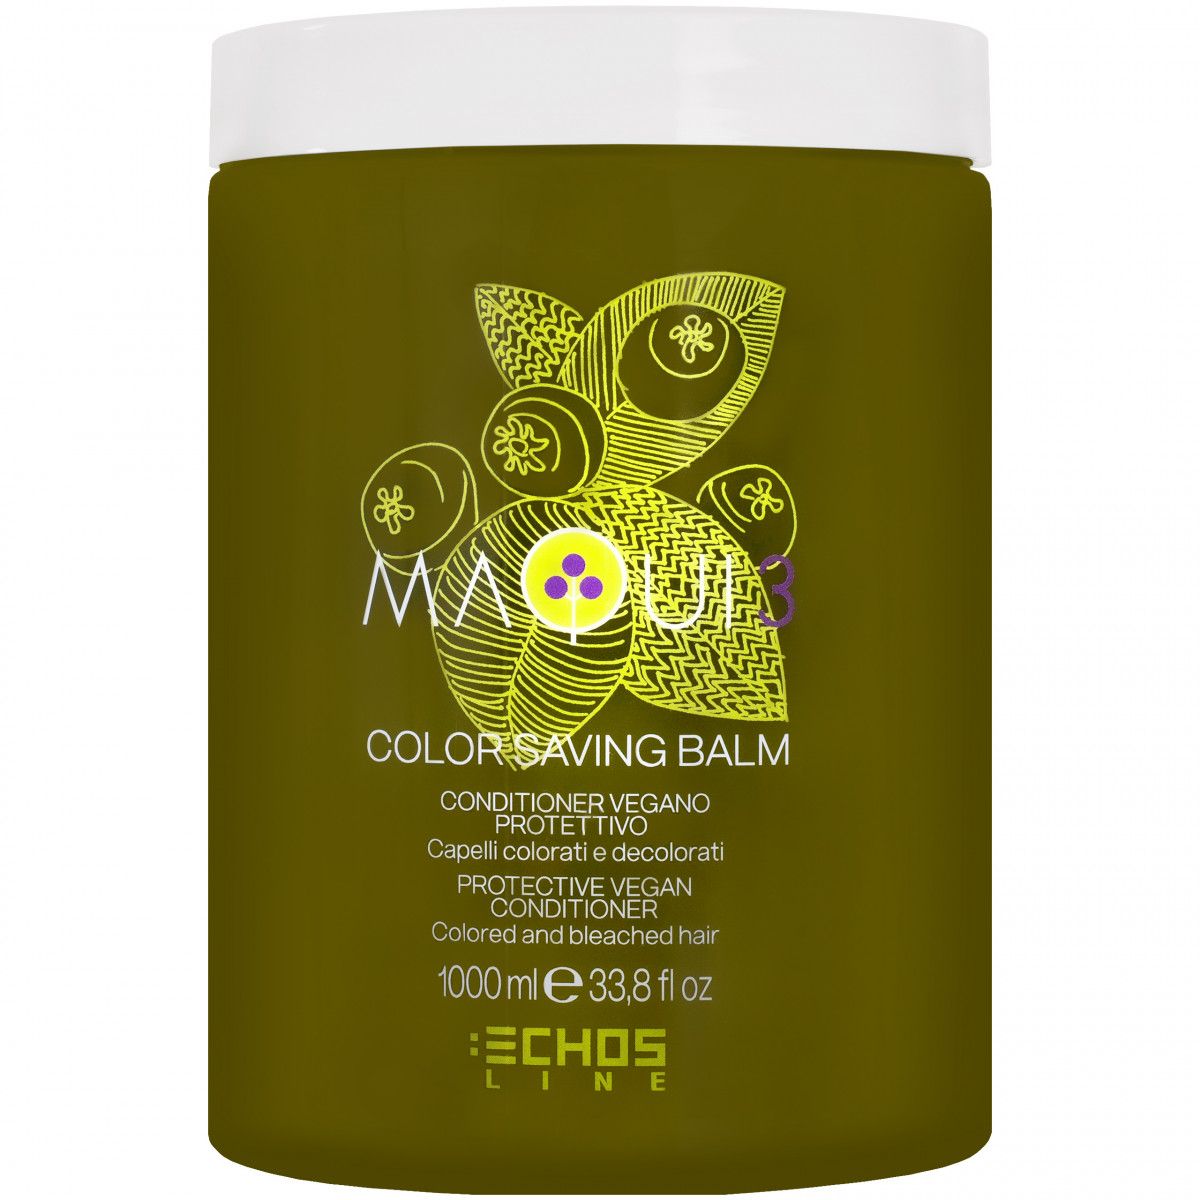 Echosline Maqui 3 Color Saving Balm Conditioner - wegańska odżywka do włosów farbowanych, 1000ml